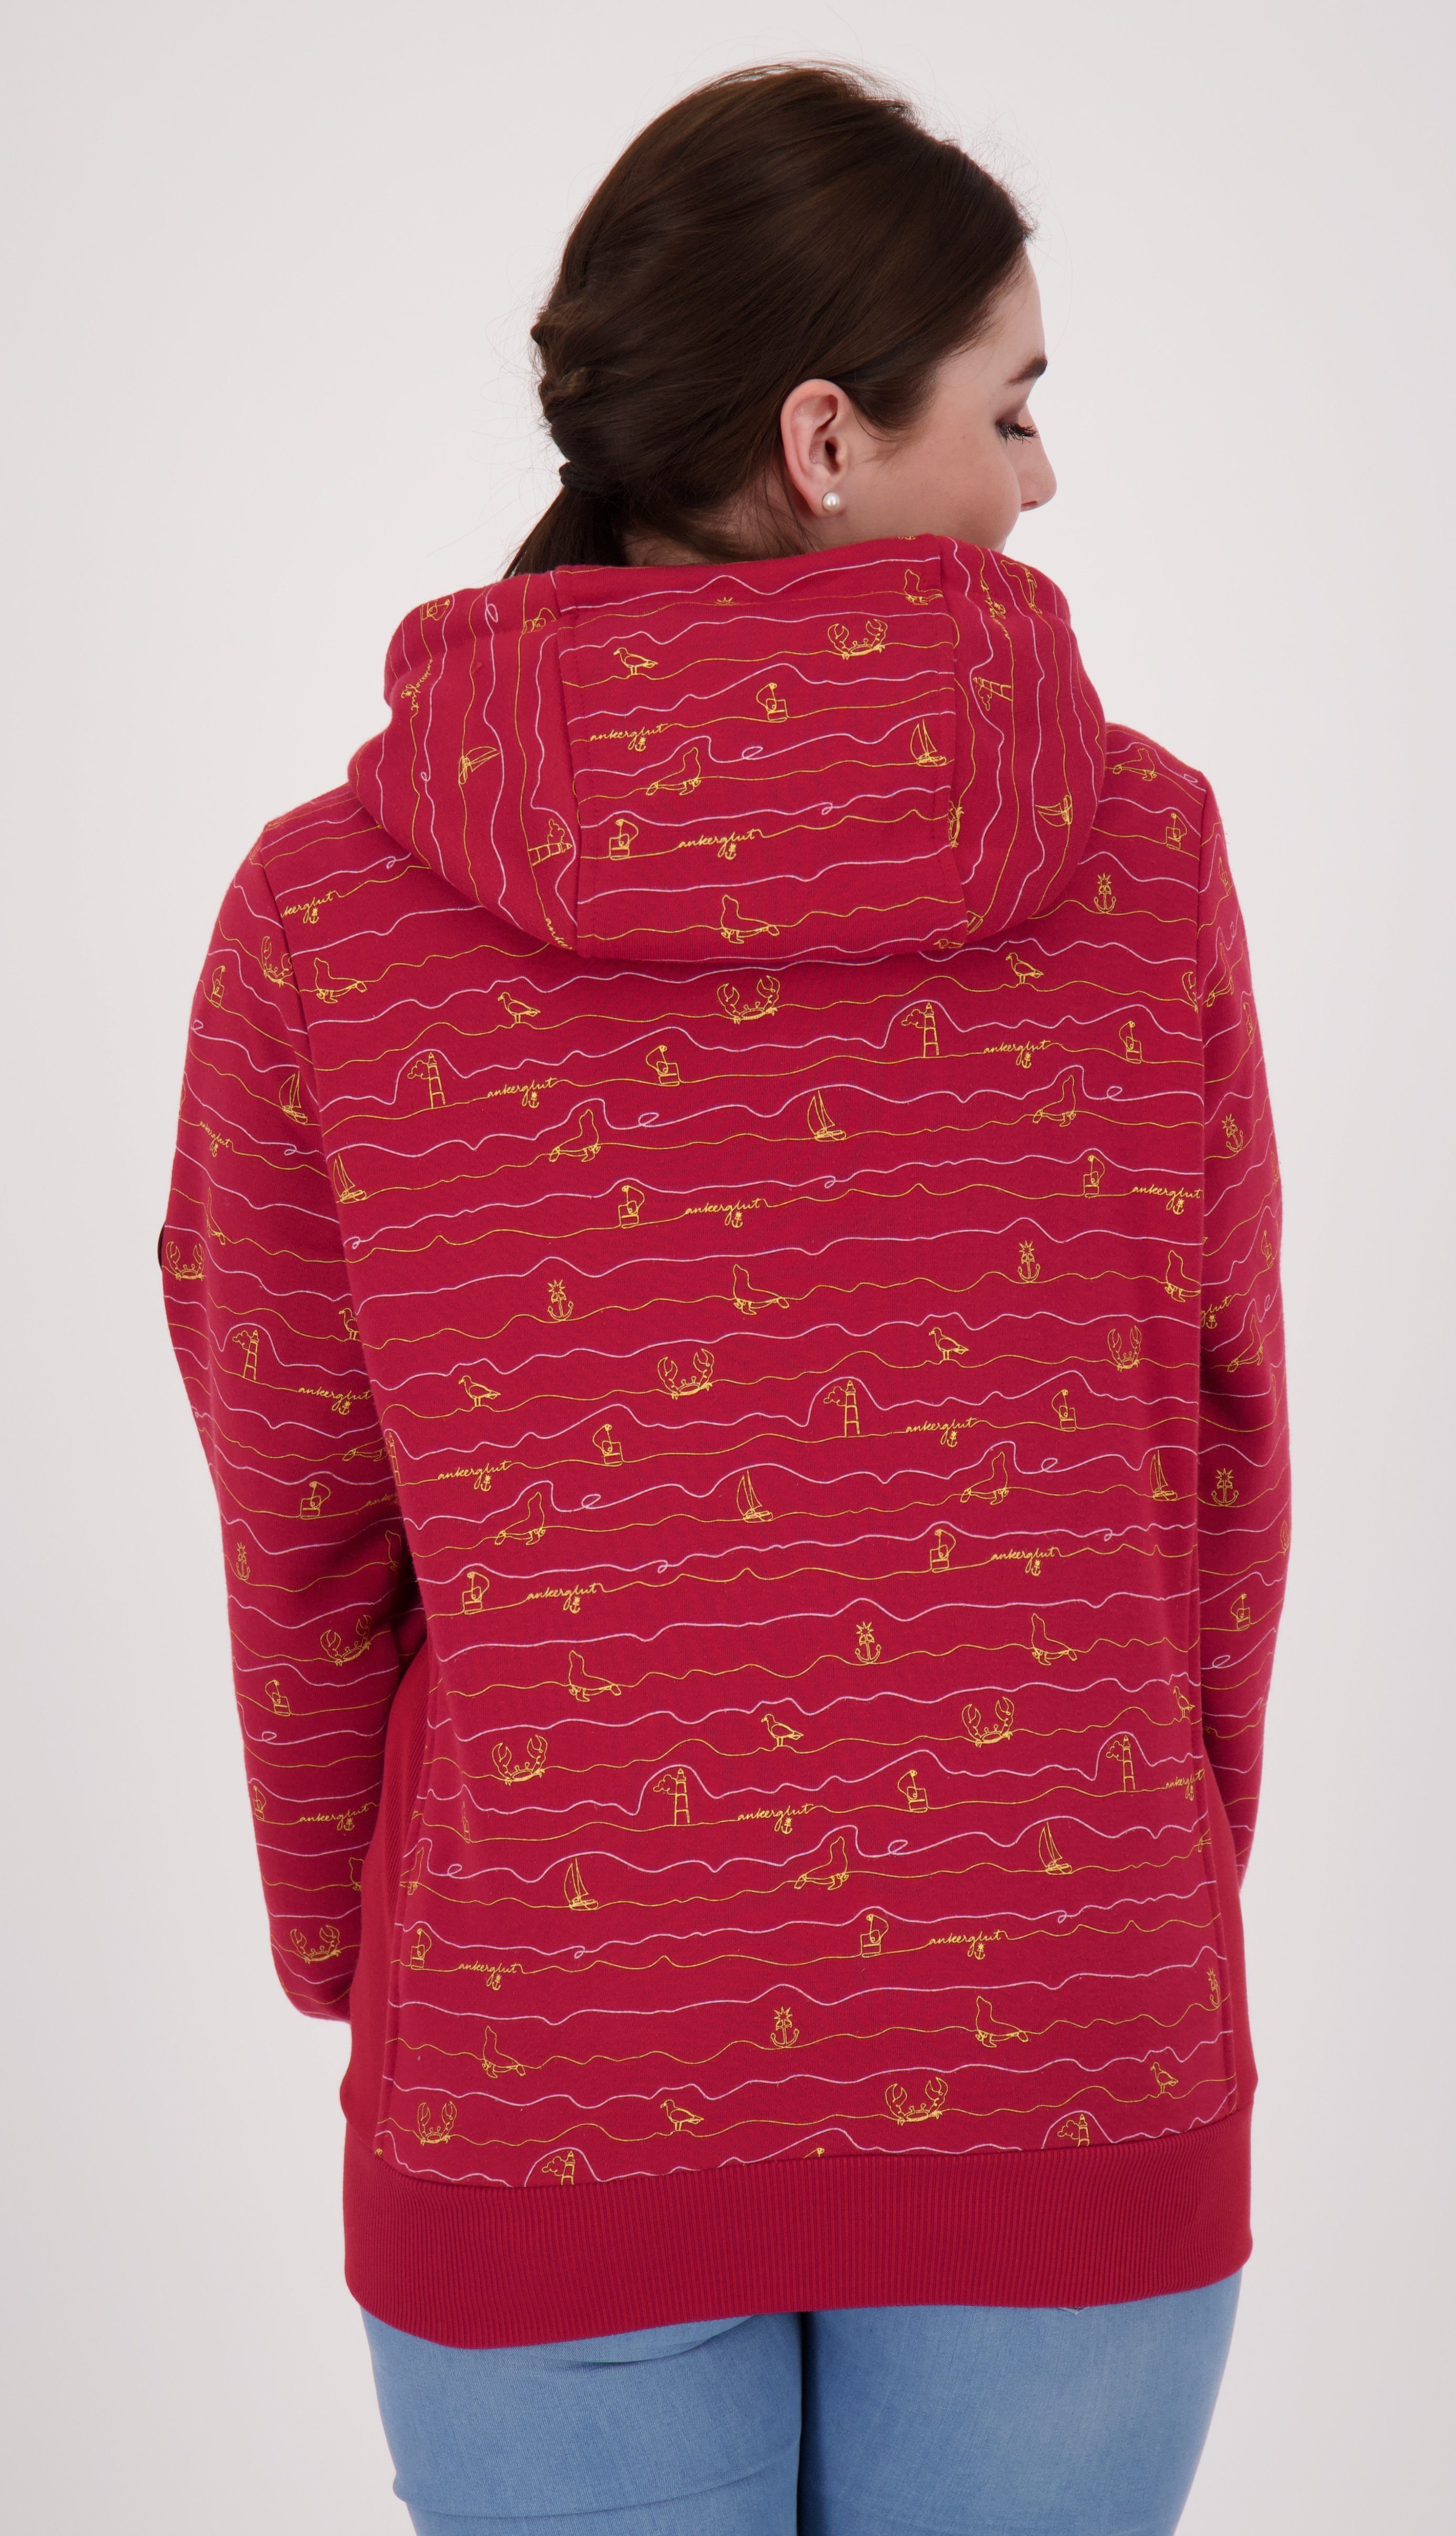 DEPROC Active Women erhältlich Kapuzensweatjacke Großen auch #ankerglutwelle Größen dark red in CS NEW